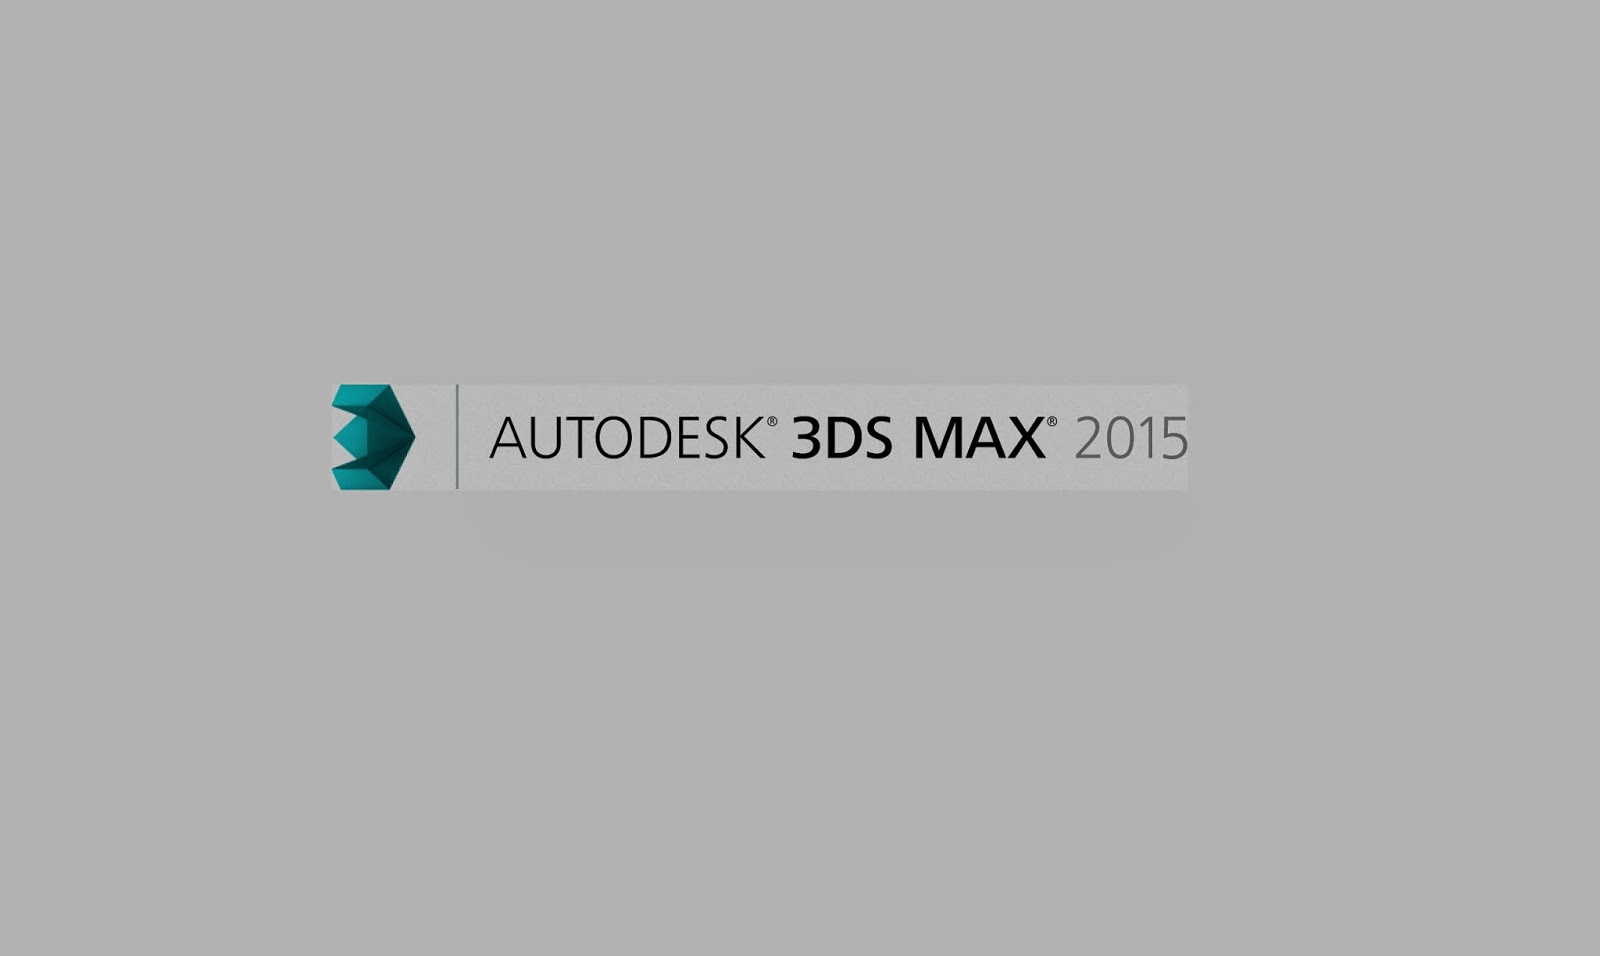 Autodesk 3ds max 2015 crack